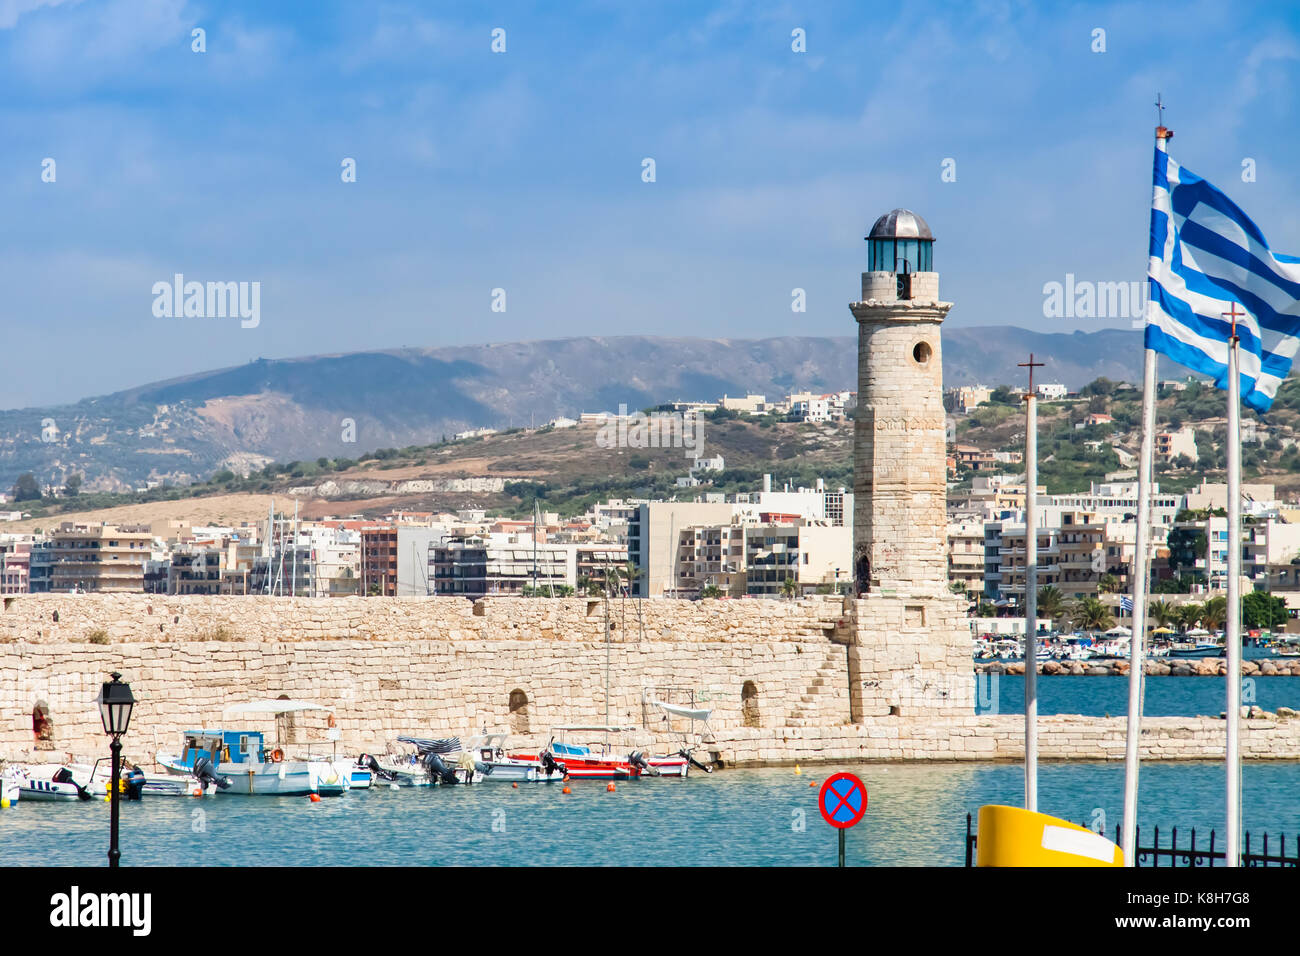 El faro del puerto veneciano de Rethymno y un pabellón de Grecia Foto de stock